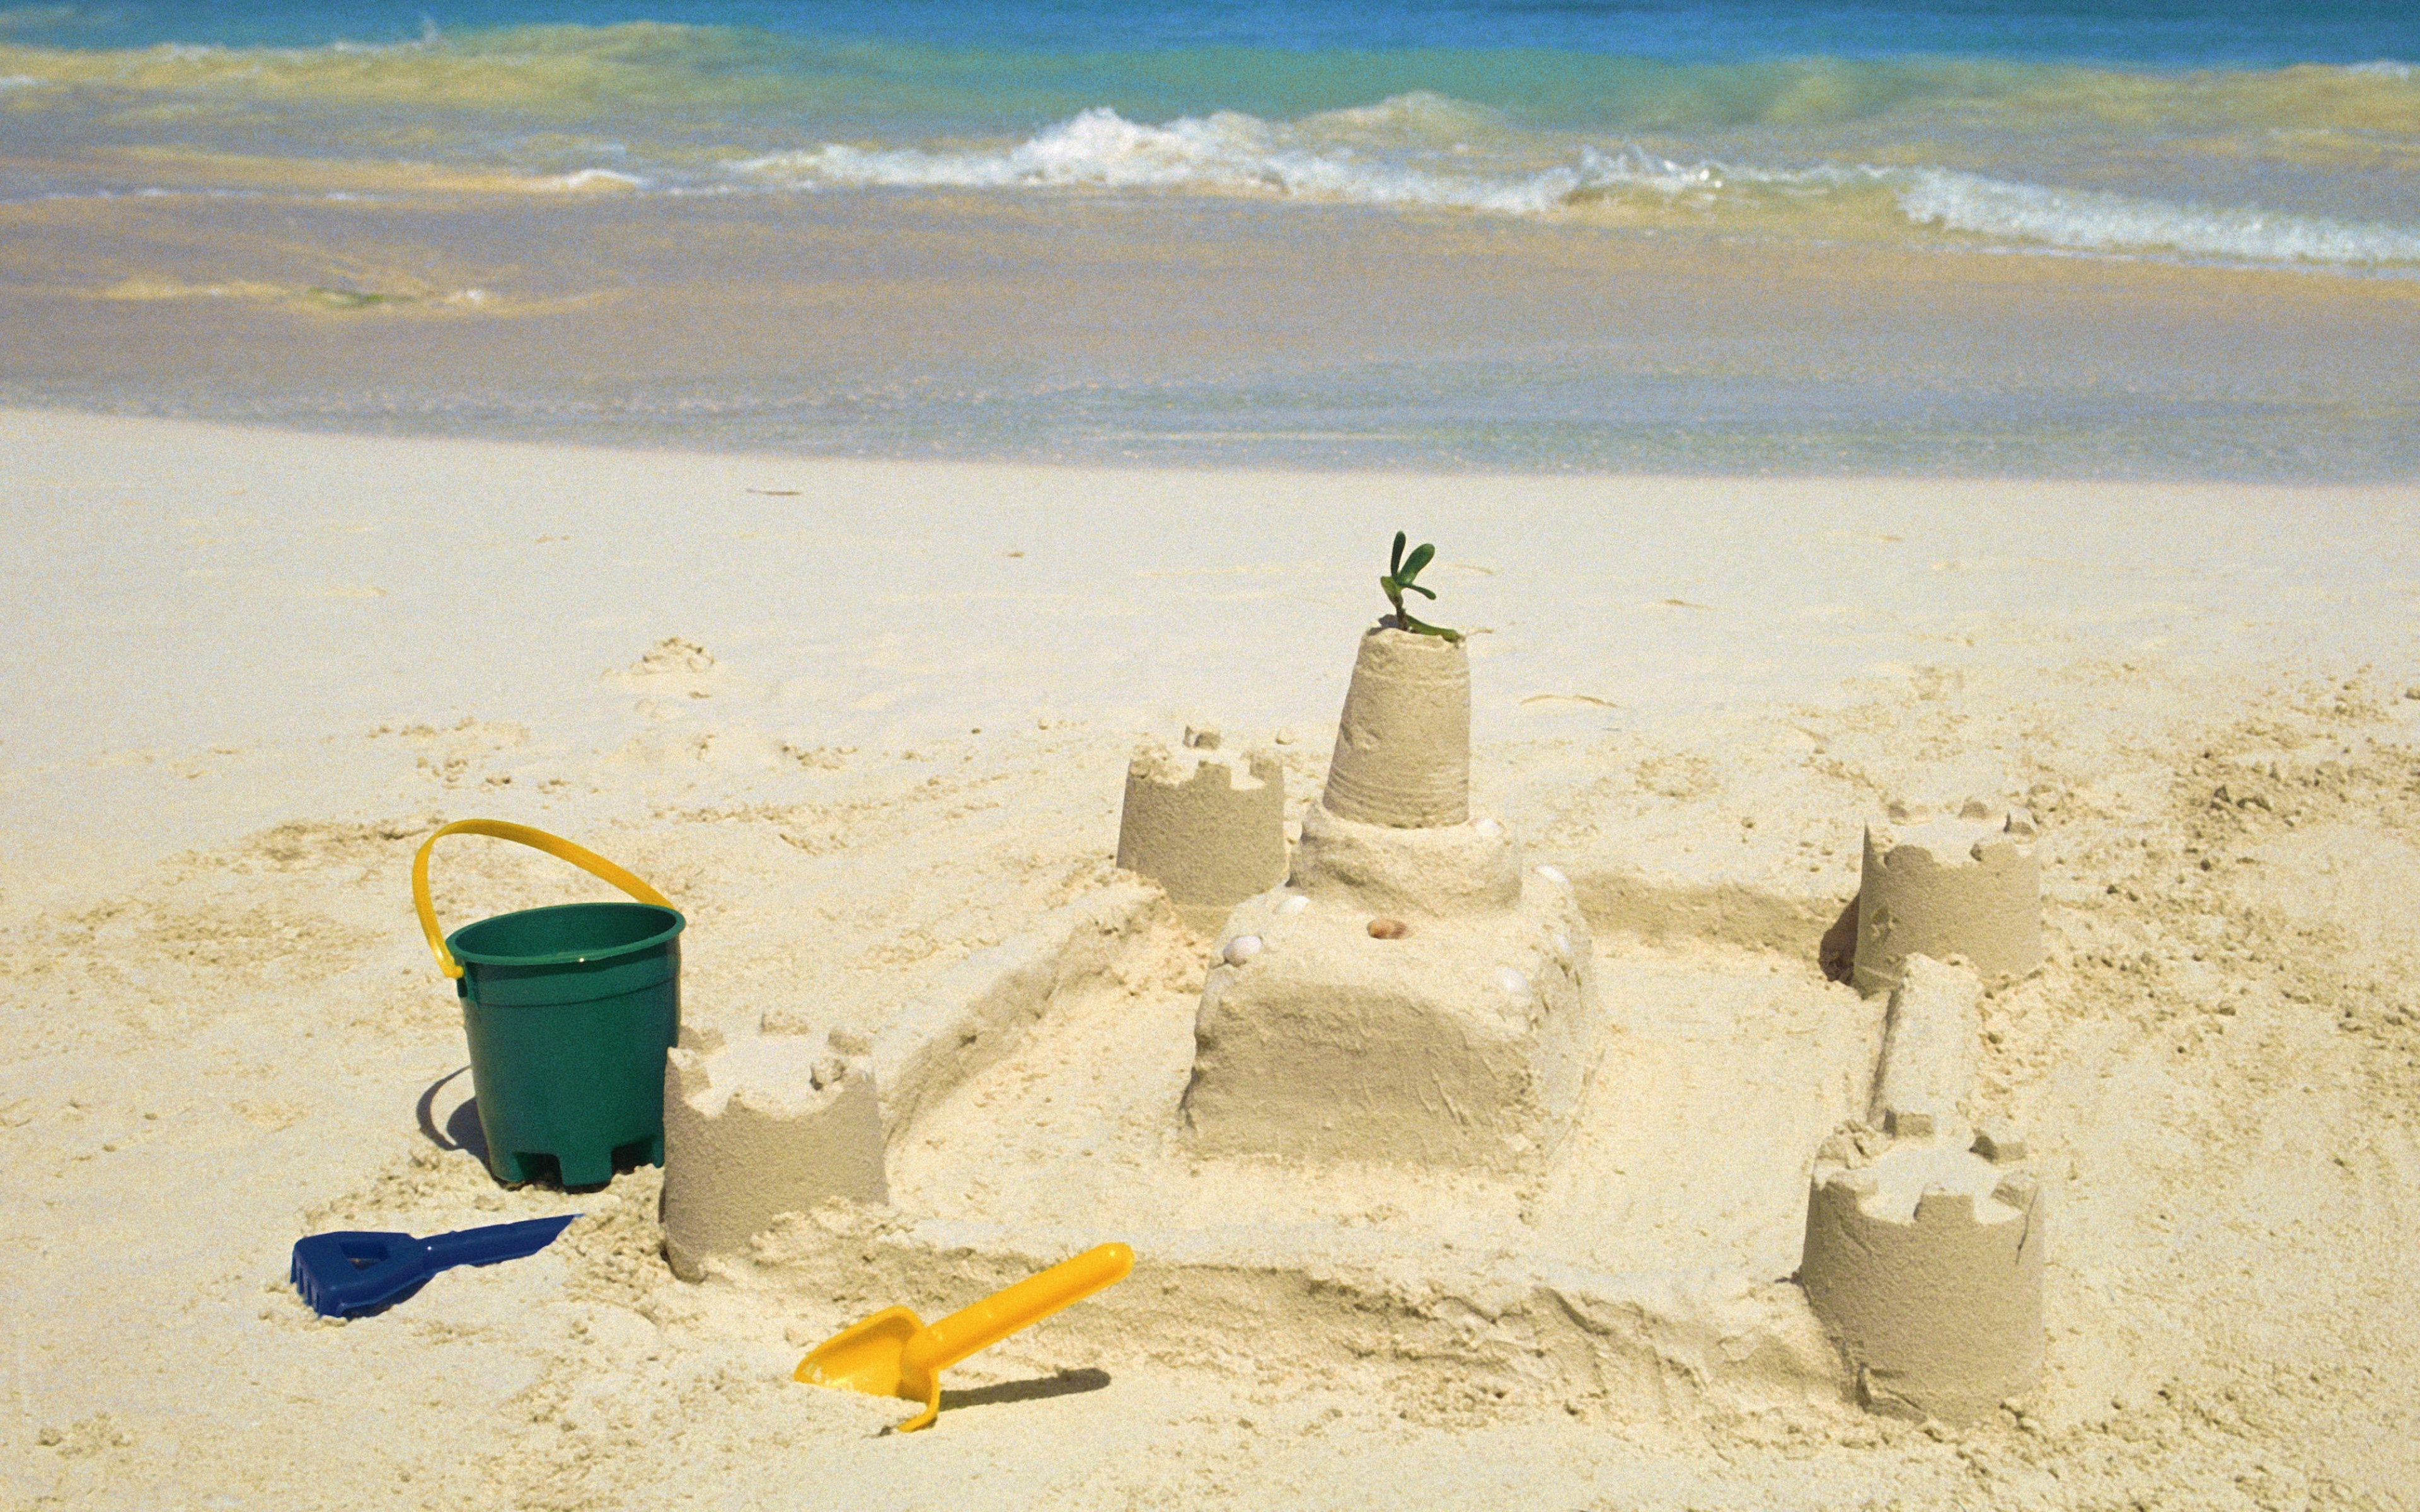 Sandcastle picture. Домик из песка. Песочный замок. Песочные замки на пляже. Замок из песка на пляже.